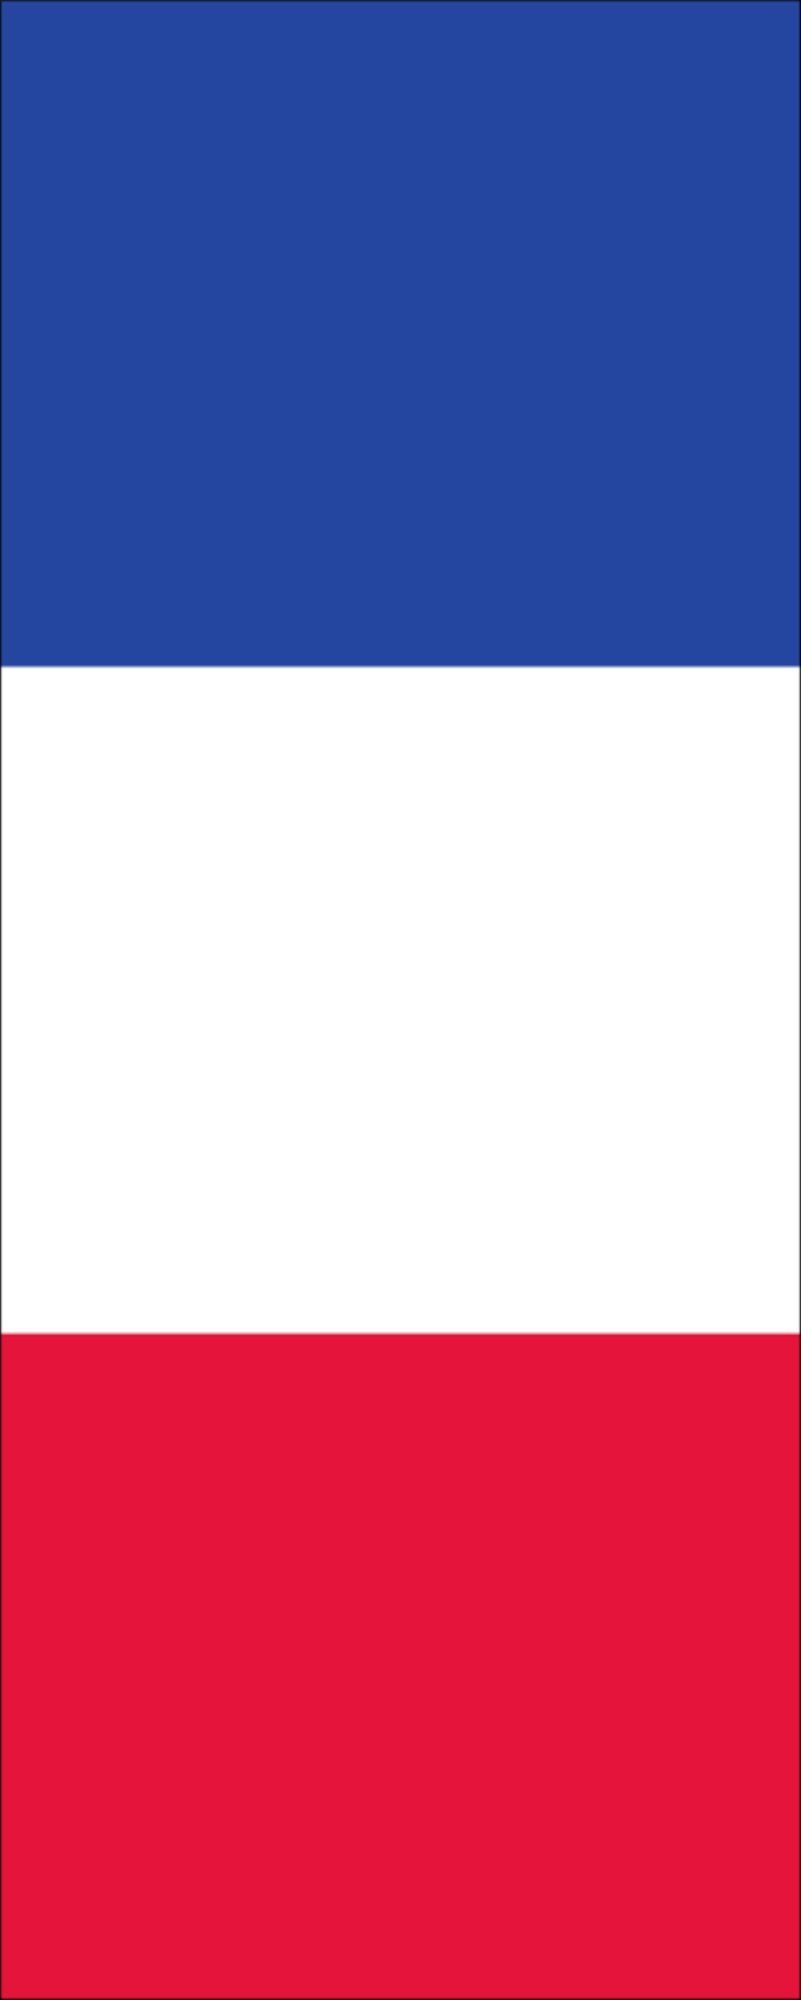 Flagge Frankreich flaggenmeer Hochformat g/m² 120